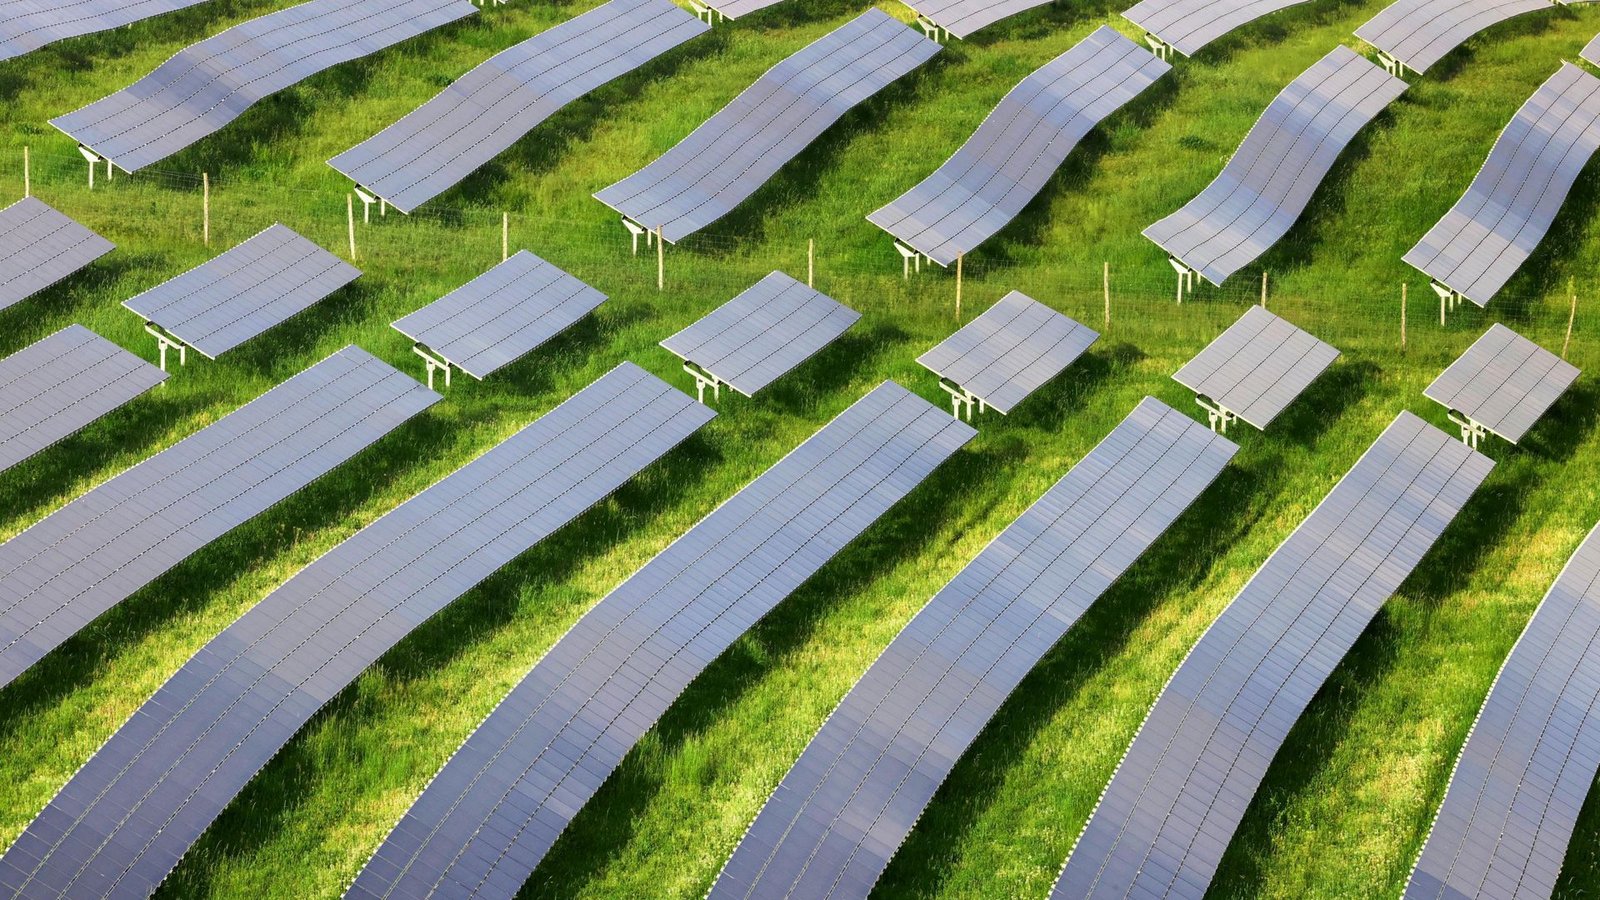 Solarparks könnten bald auch an Landesstraßen entstehen.Foto: dpa/Karl-Josef Hildenbrand